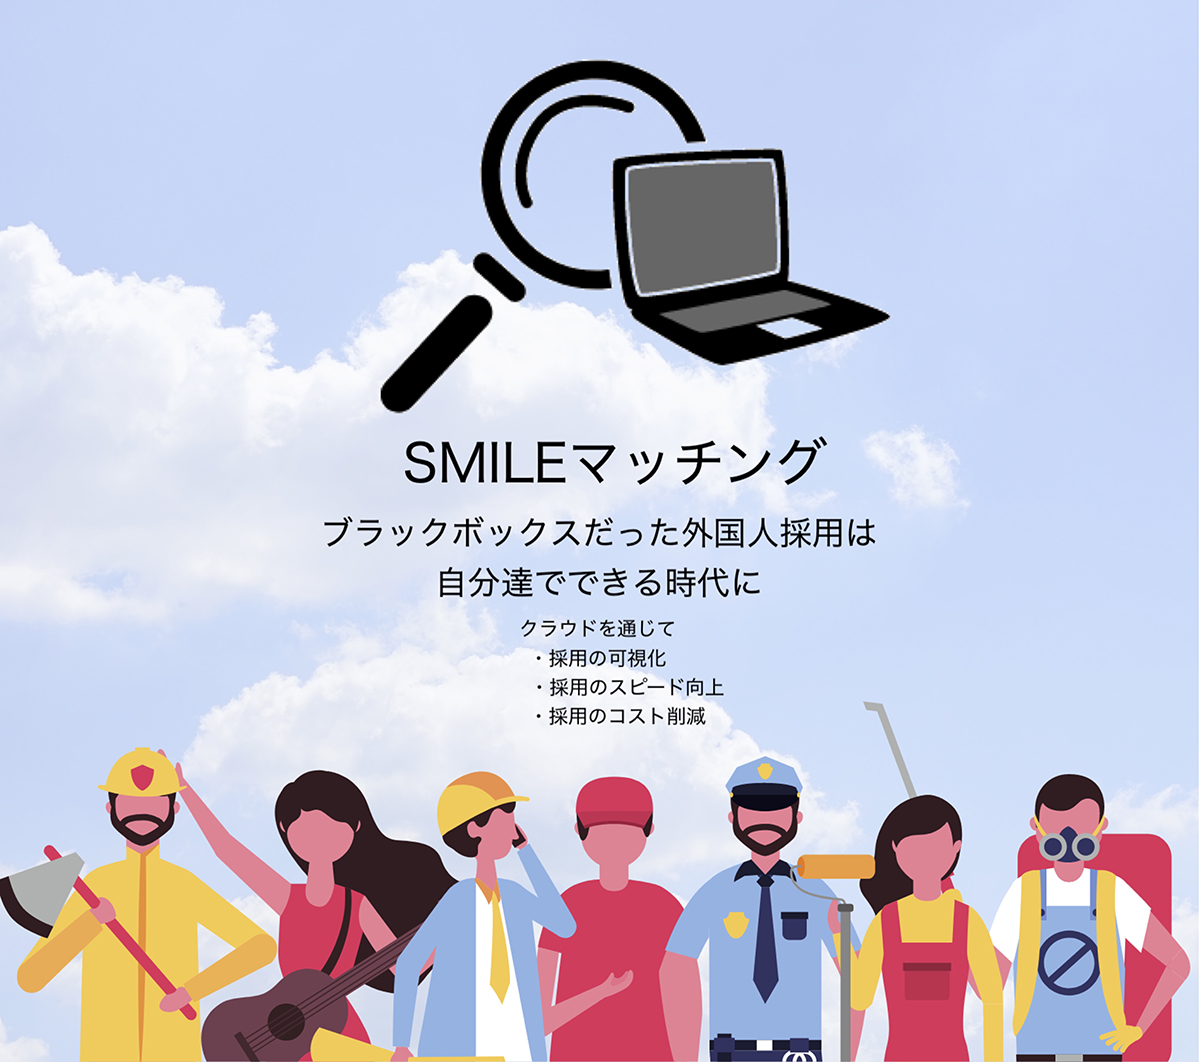 外国人採用に革新をもたらすクラウドサービス「SMILEマッチング」